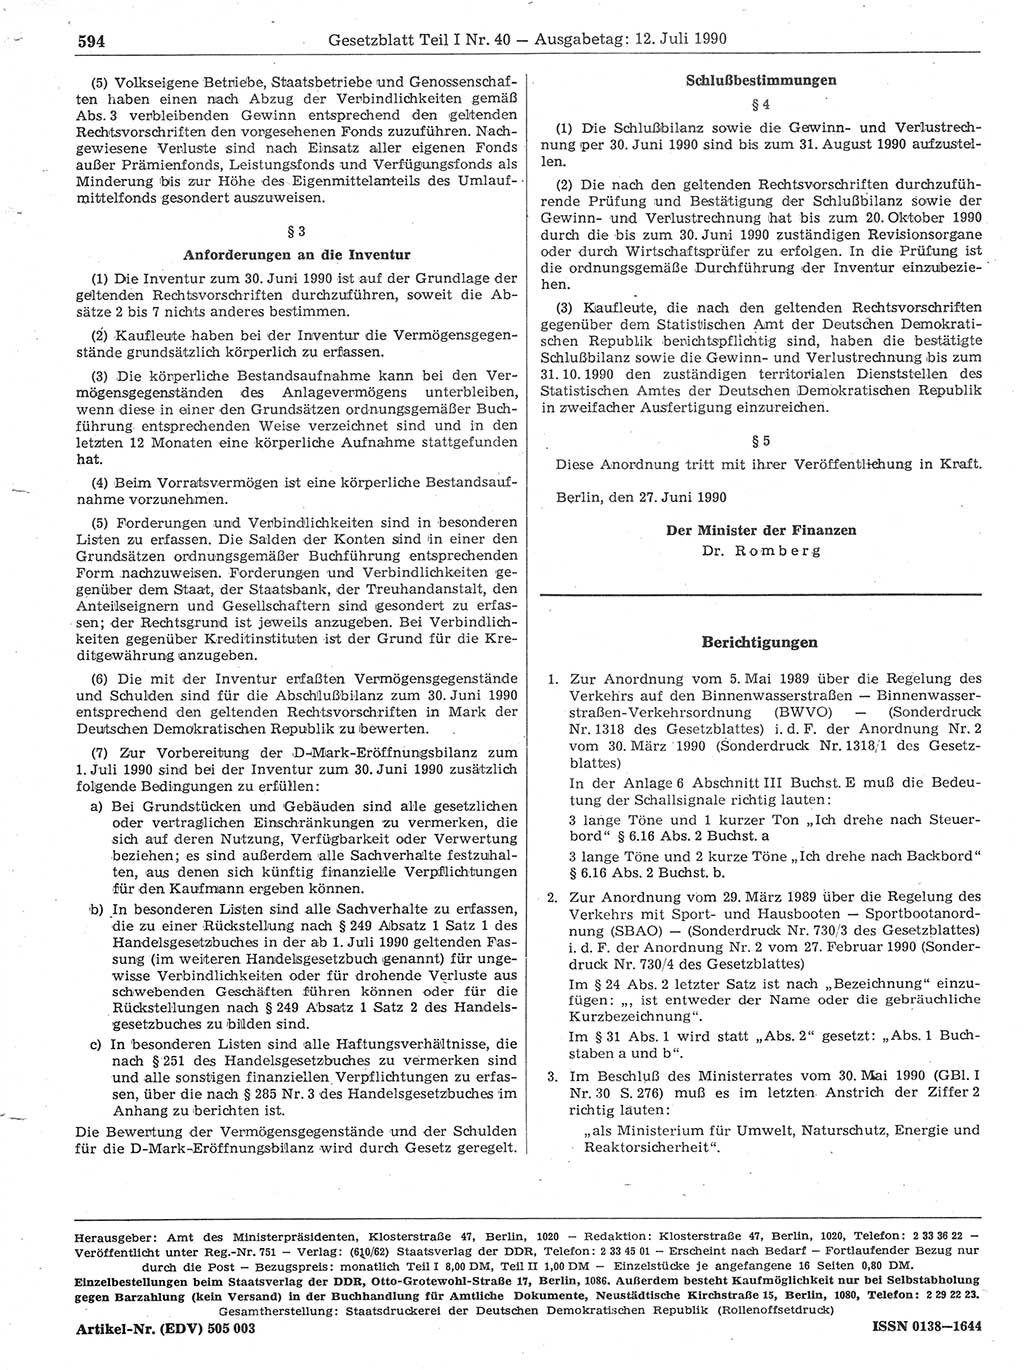 Gesetzblatt (GBl.) der Deutschen Demokratischen Republik (DDR) Teil Ⅰ 1990, Seite 594 (GBl. DDR Ⅰ 1990, S. 594)